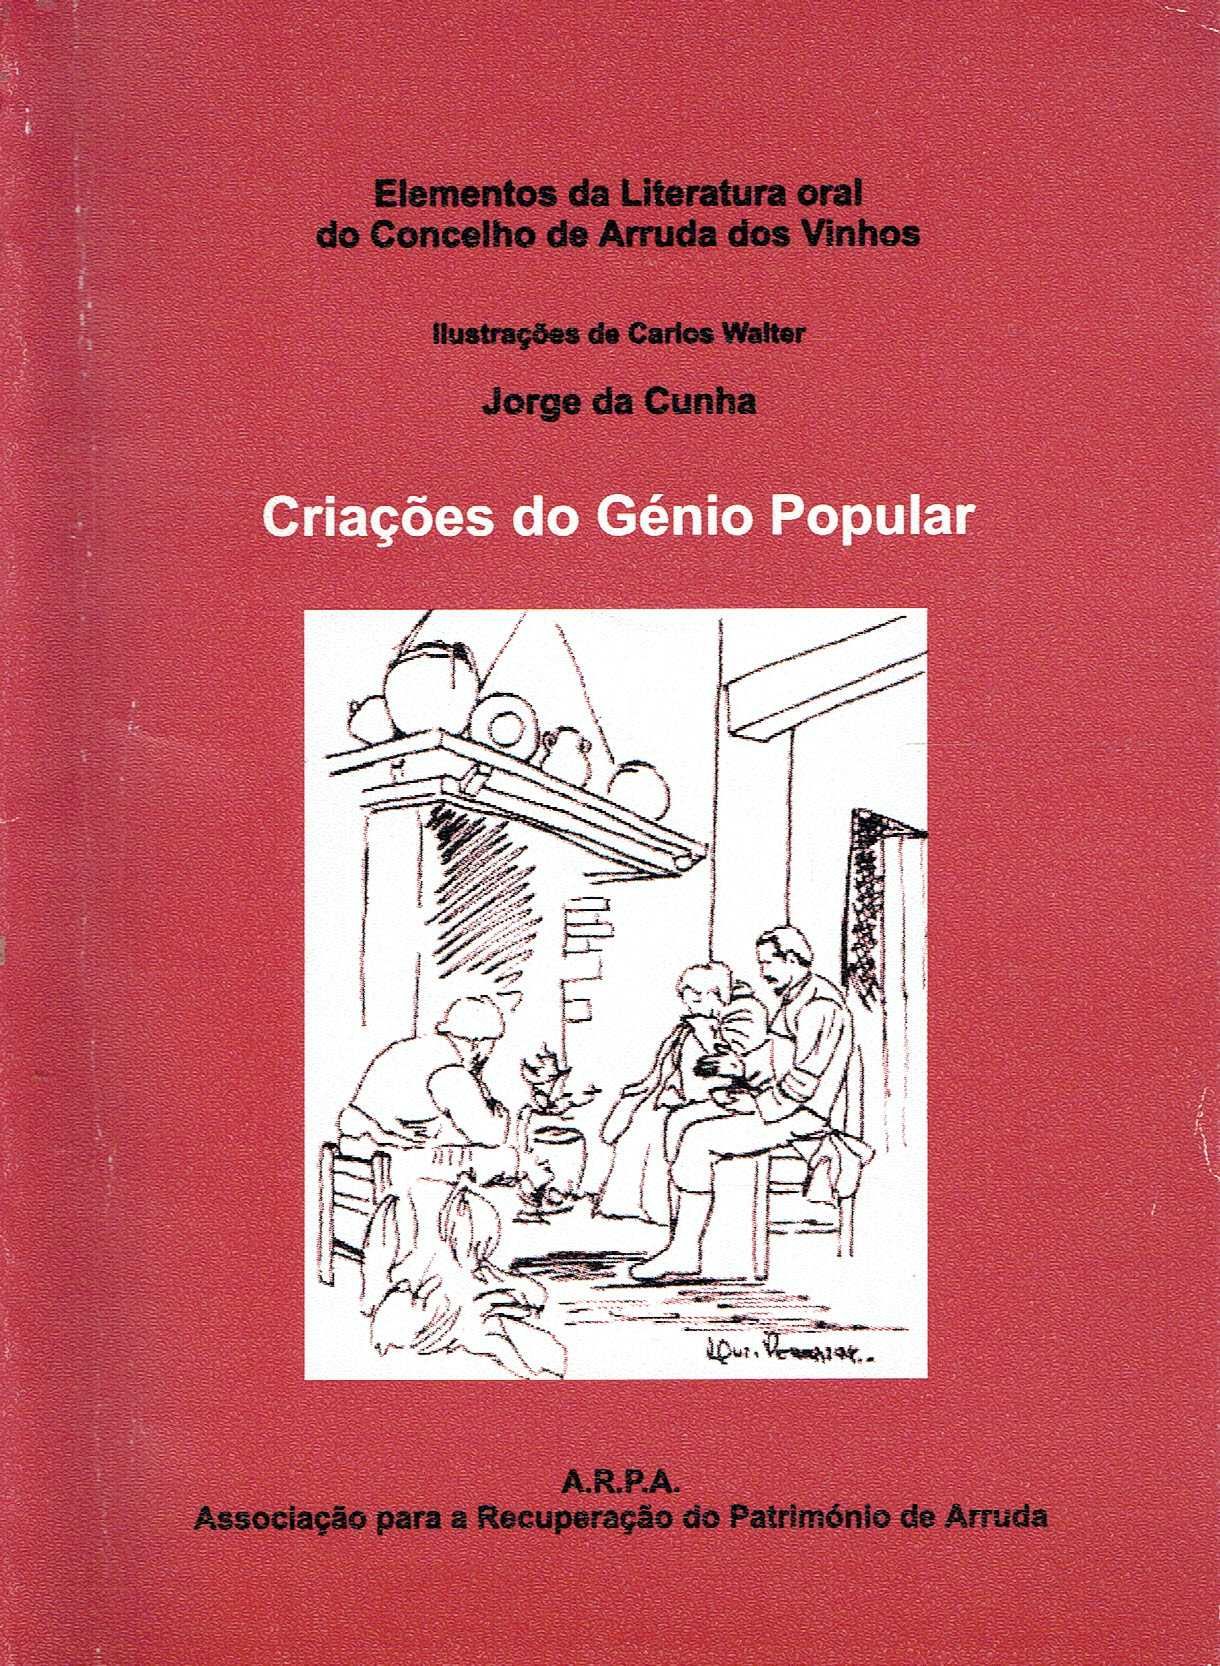 10603

Criações do Génio Popular
por Jorge da Cunha